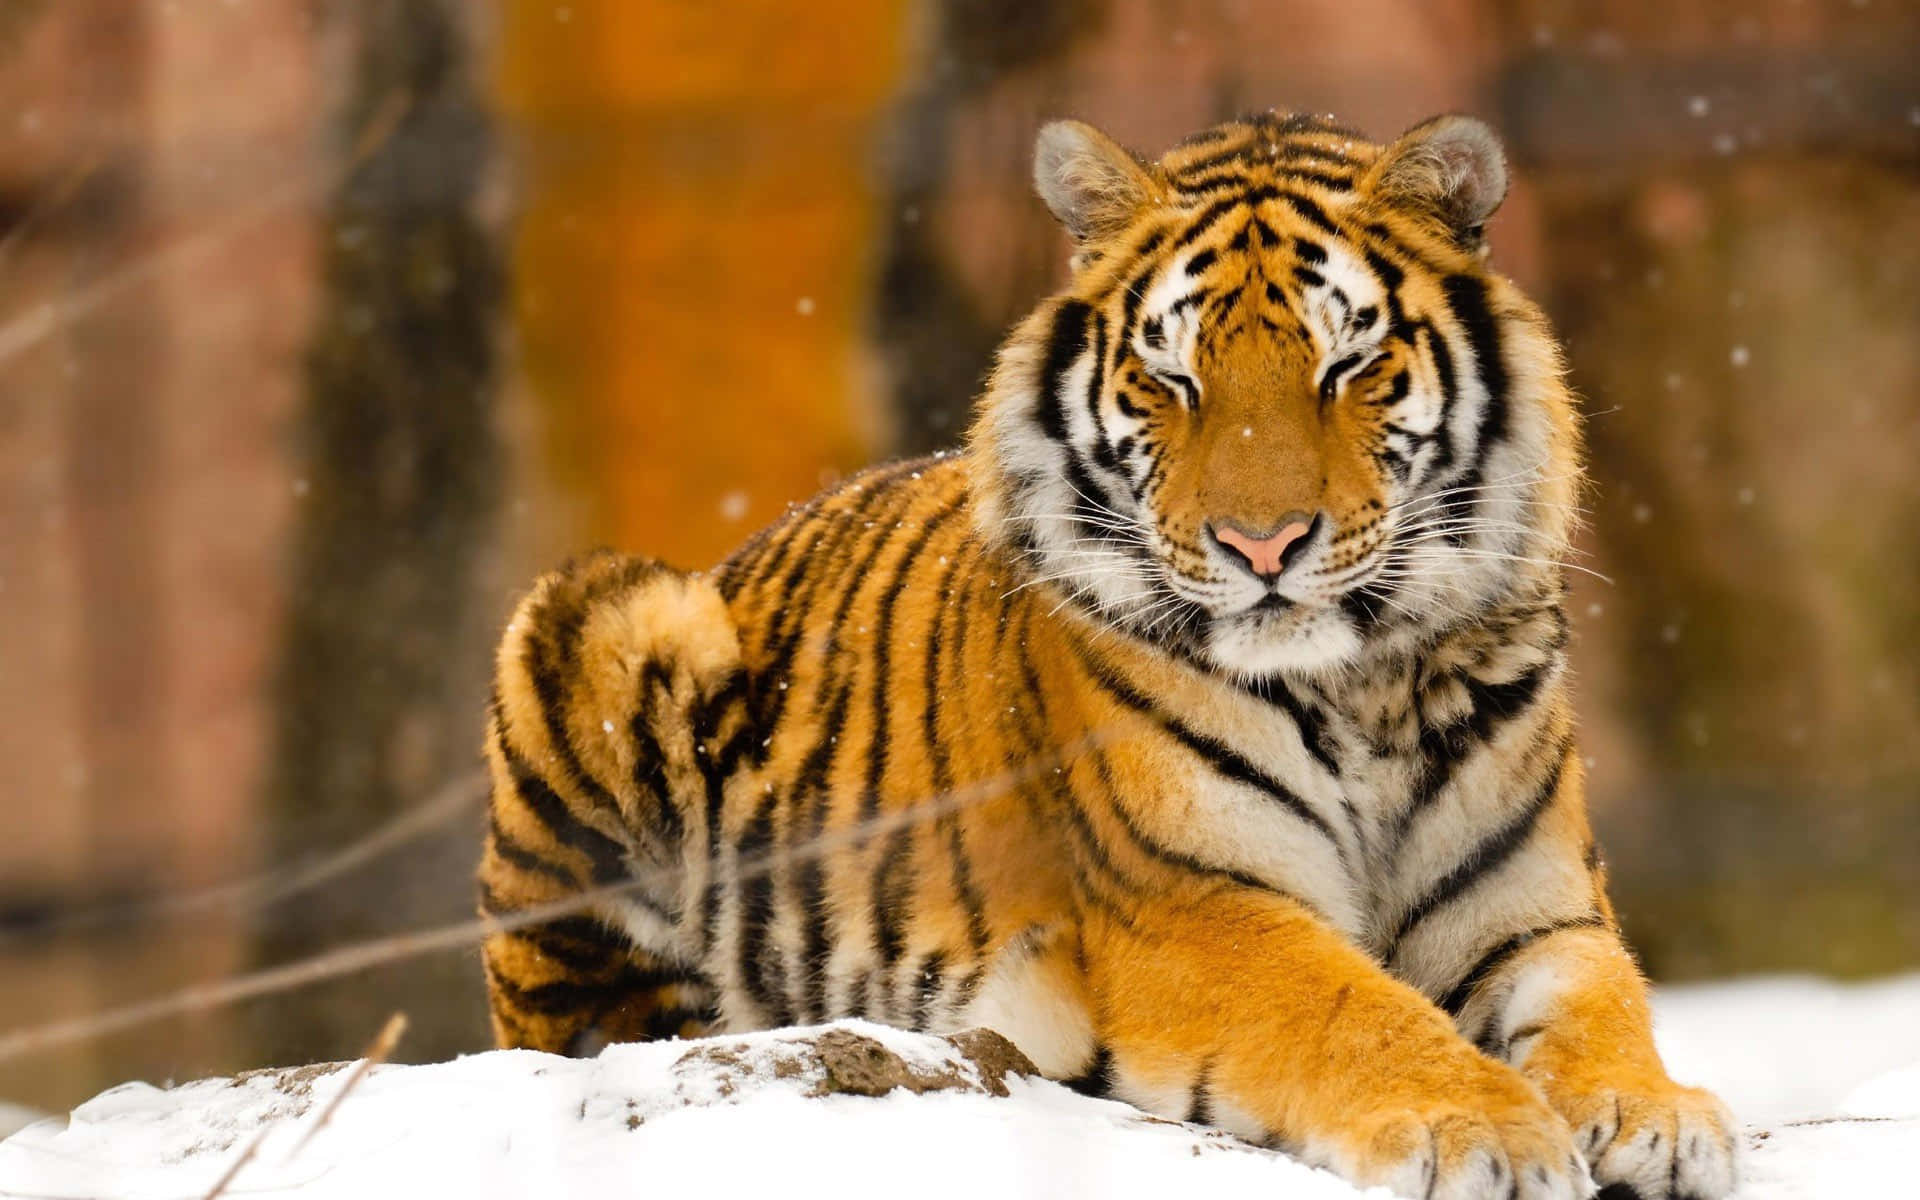 A majestic tiger walking among lemongrass.